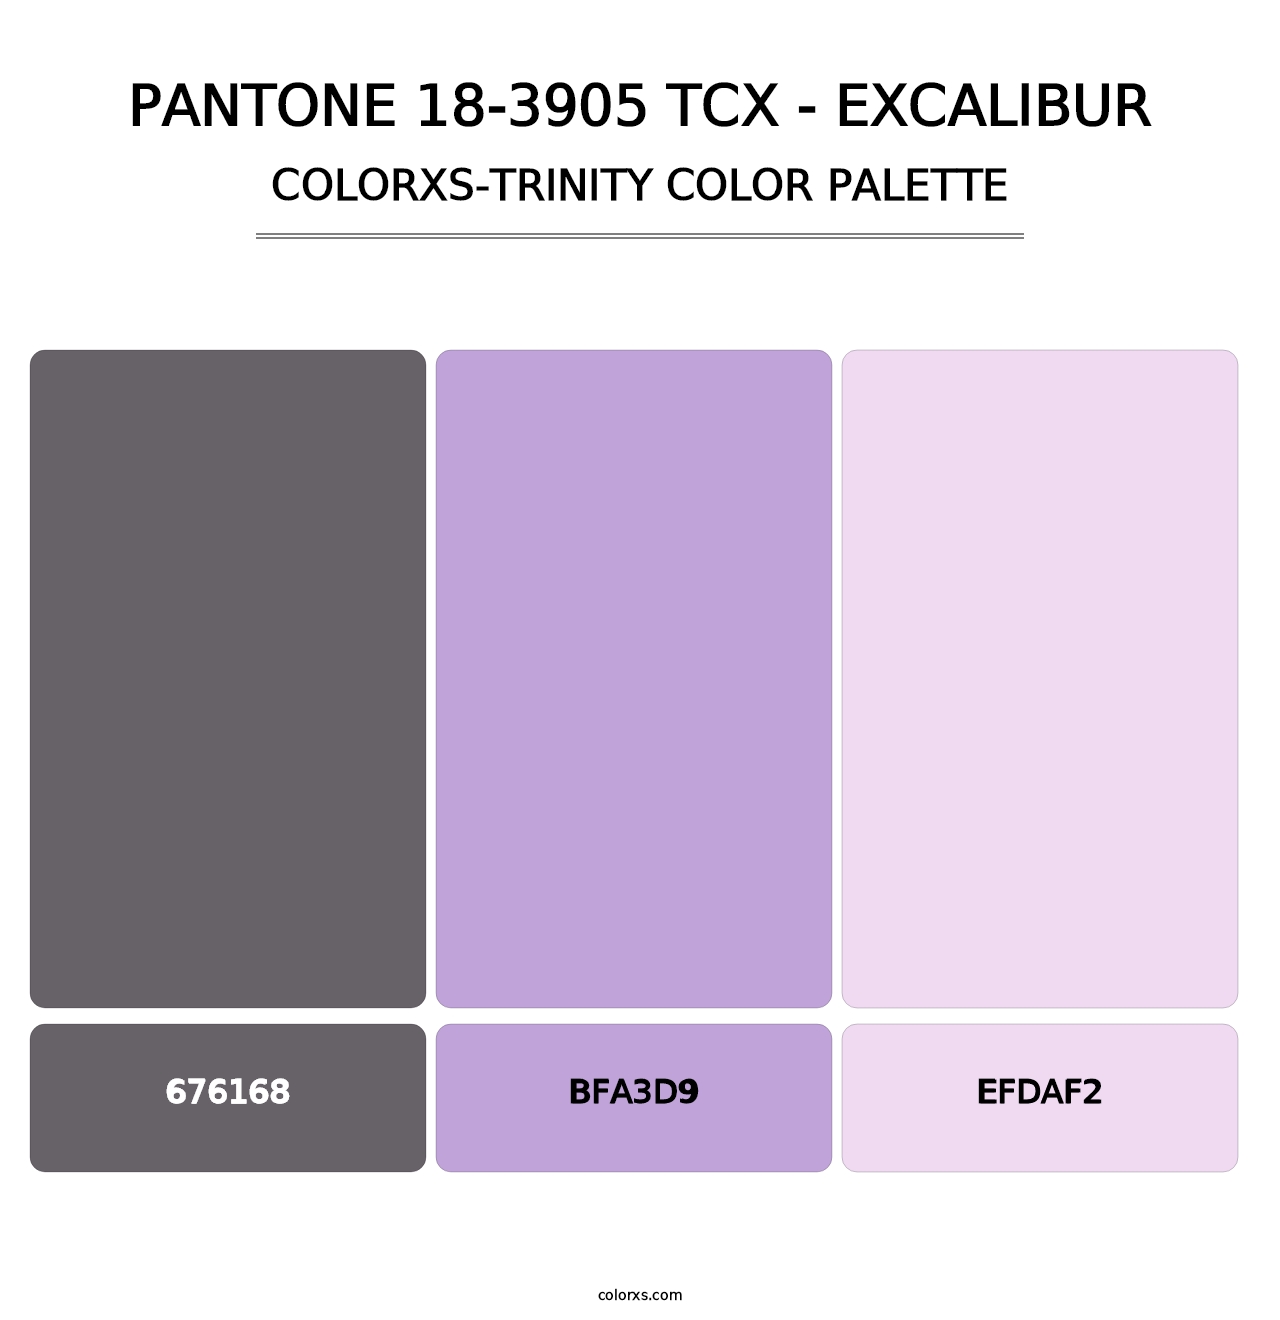 PANTONE 18-3905 TCX - Excalibur - Colorxs Trinity Palette